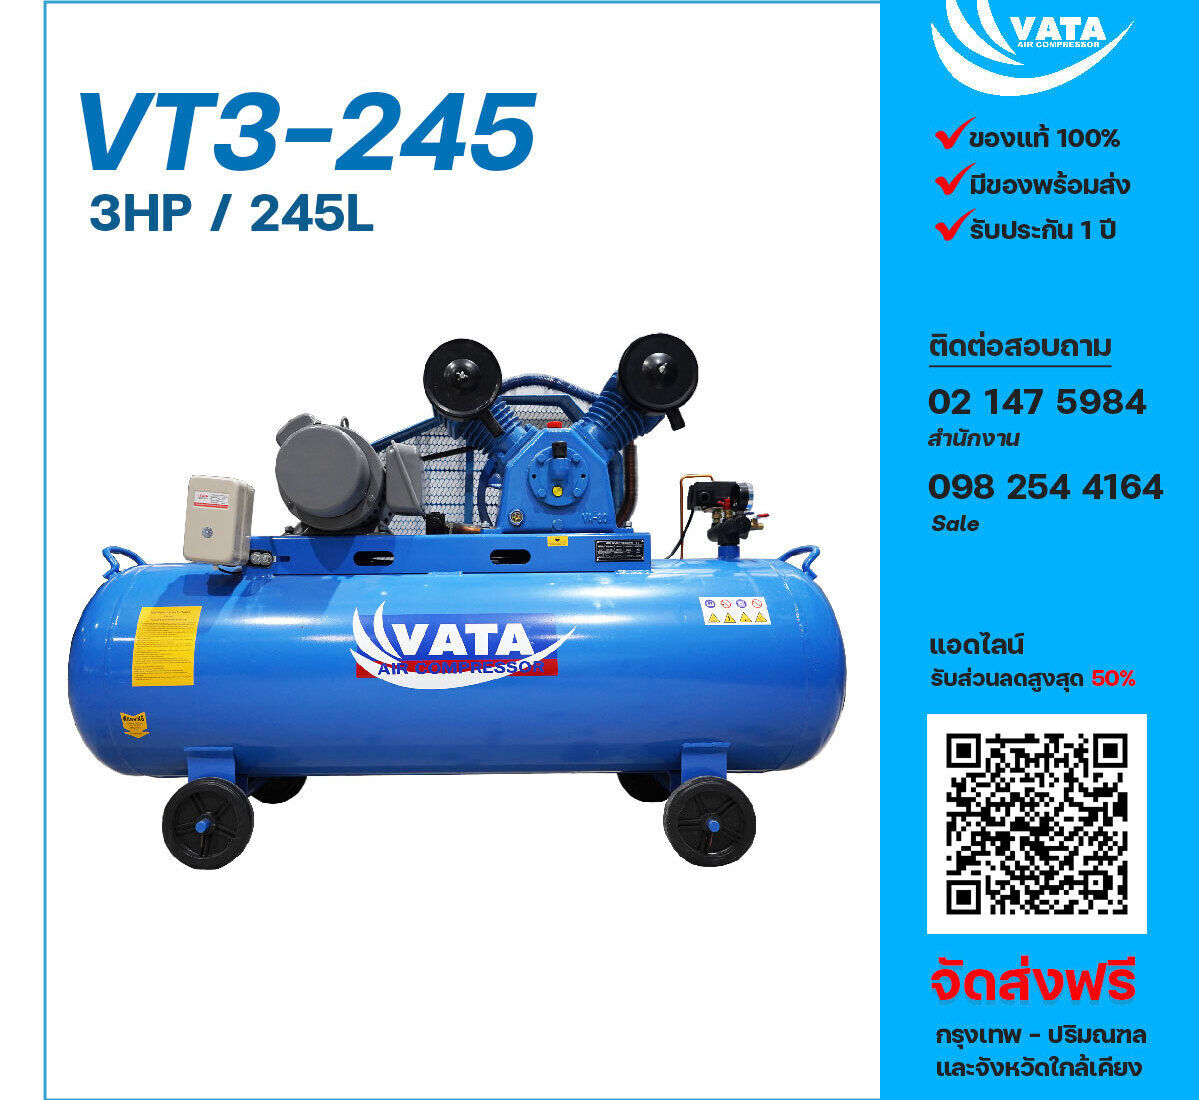 ปั๊มลมวาตะ VATA VT3-245 220V ปั๊มลมลูกสูบ ขนาด 2 สูบ 3 แรงม้า 245 ลิตร VATA พร้อมมอเตอร์ ไฟ 220V ส่งฟรี กรุงเทพฯ-ปริมณฑล รับประกัน 1 ปี